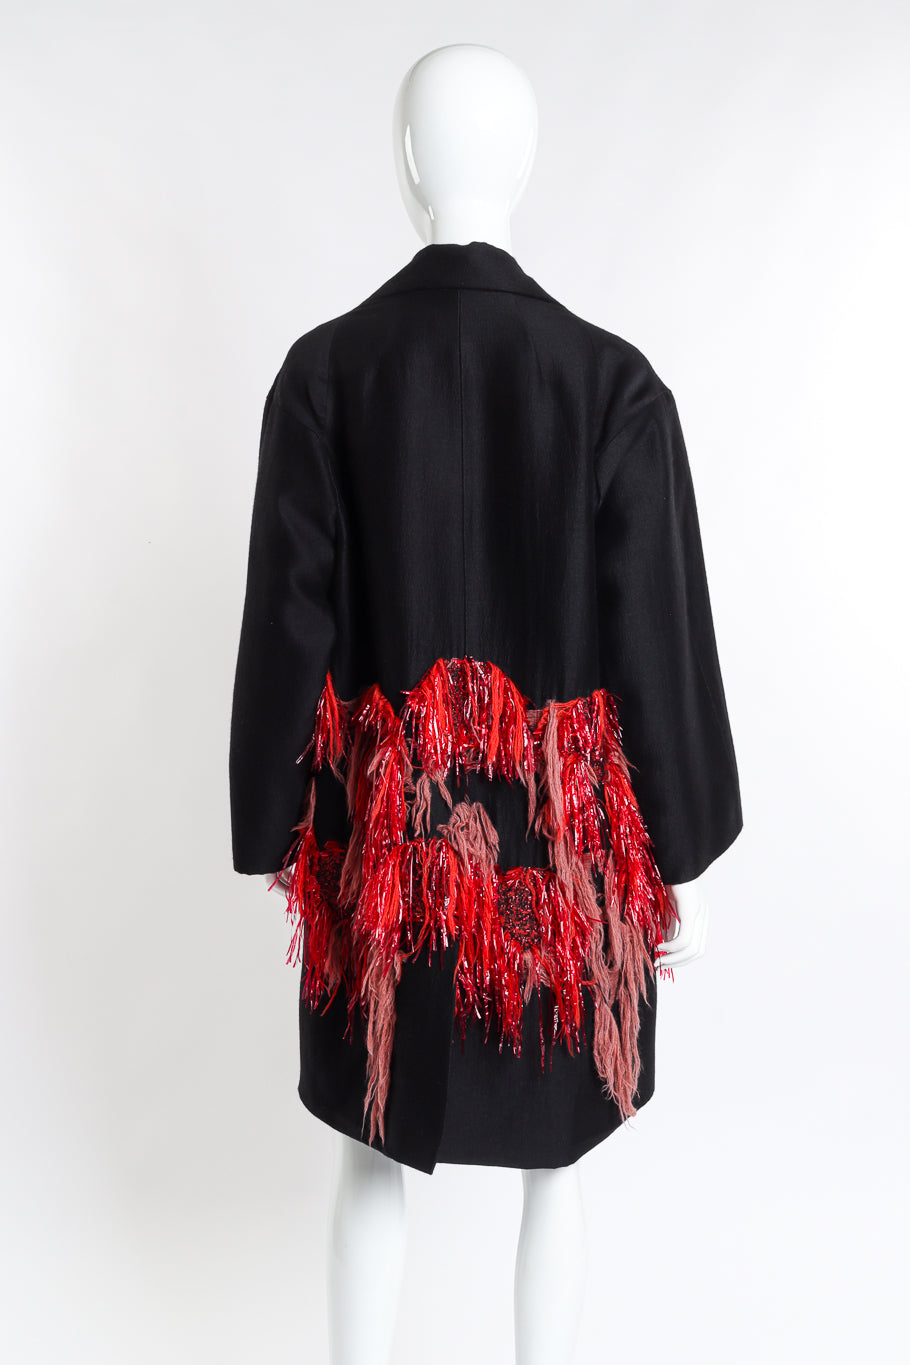 Dries Van Noten Tassel & Tinsel Feature Coat back on mannequin @recess la